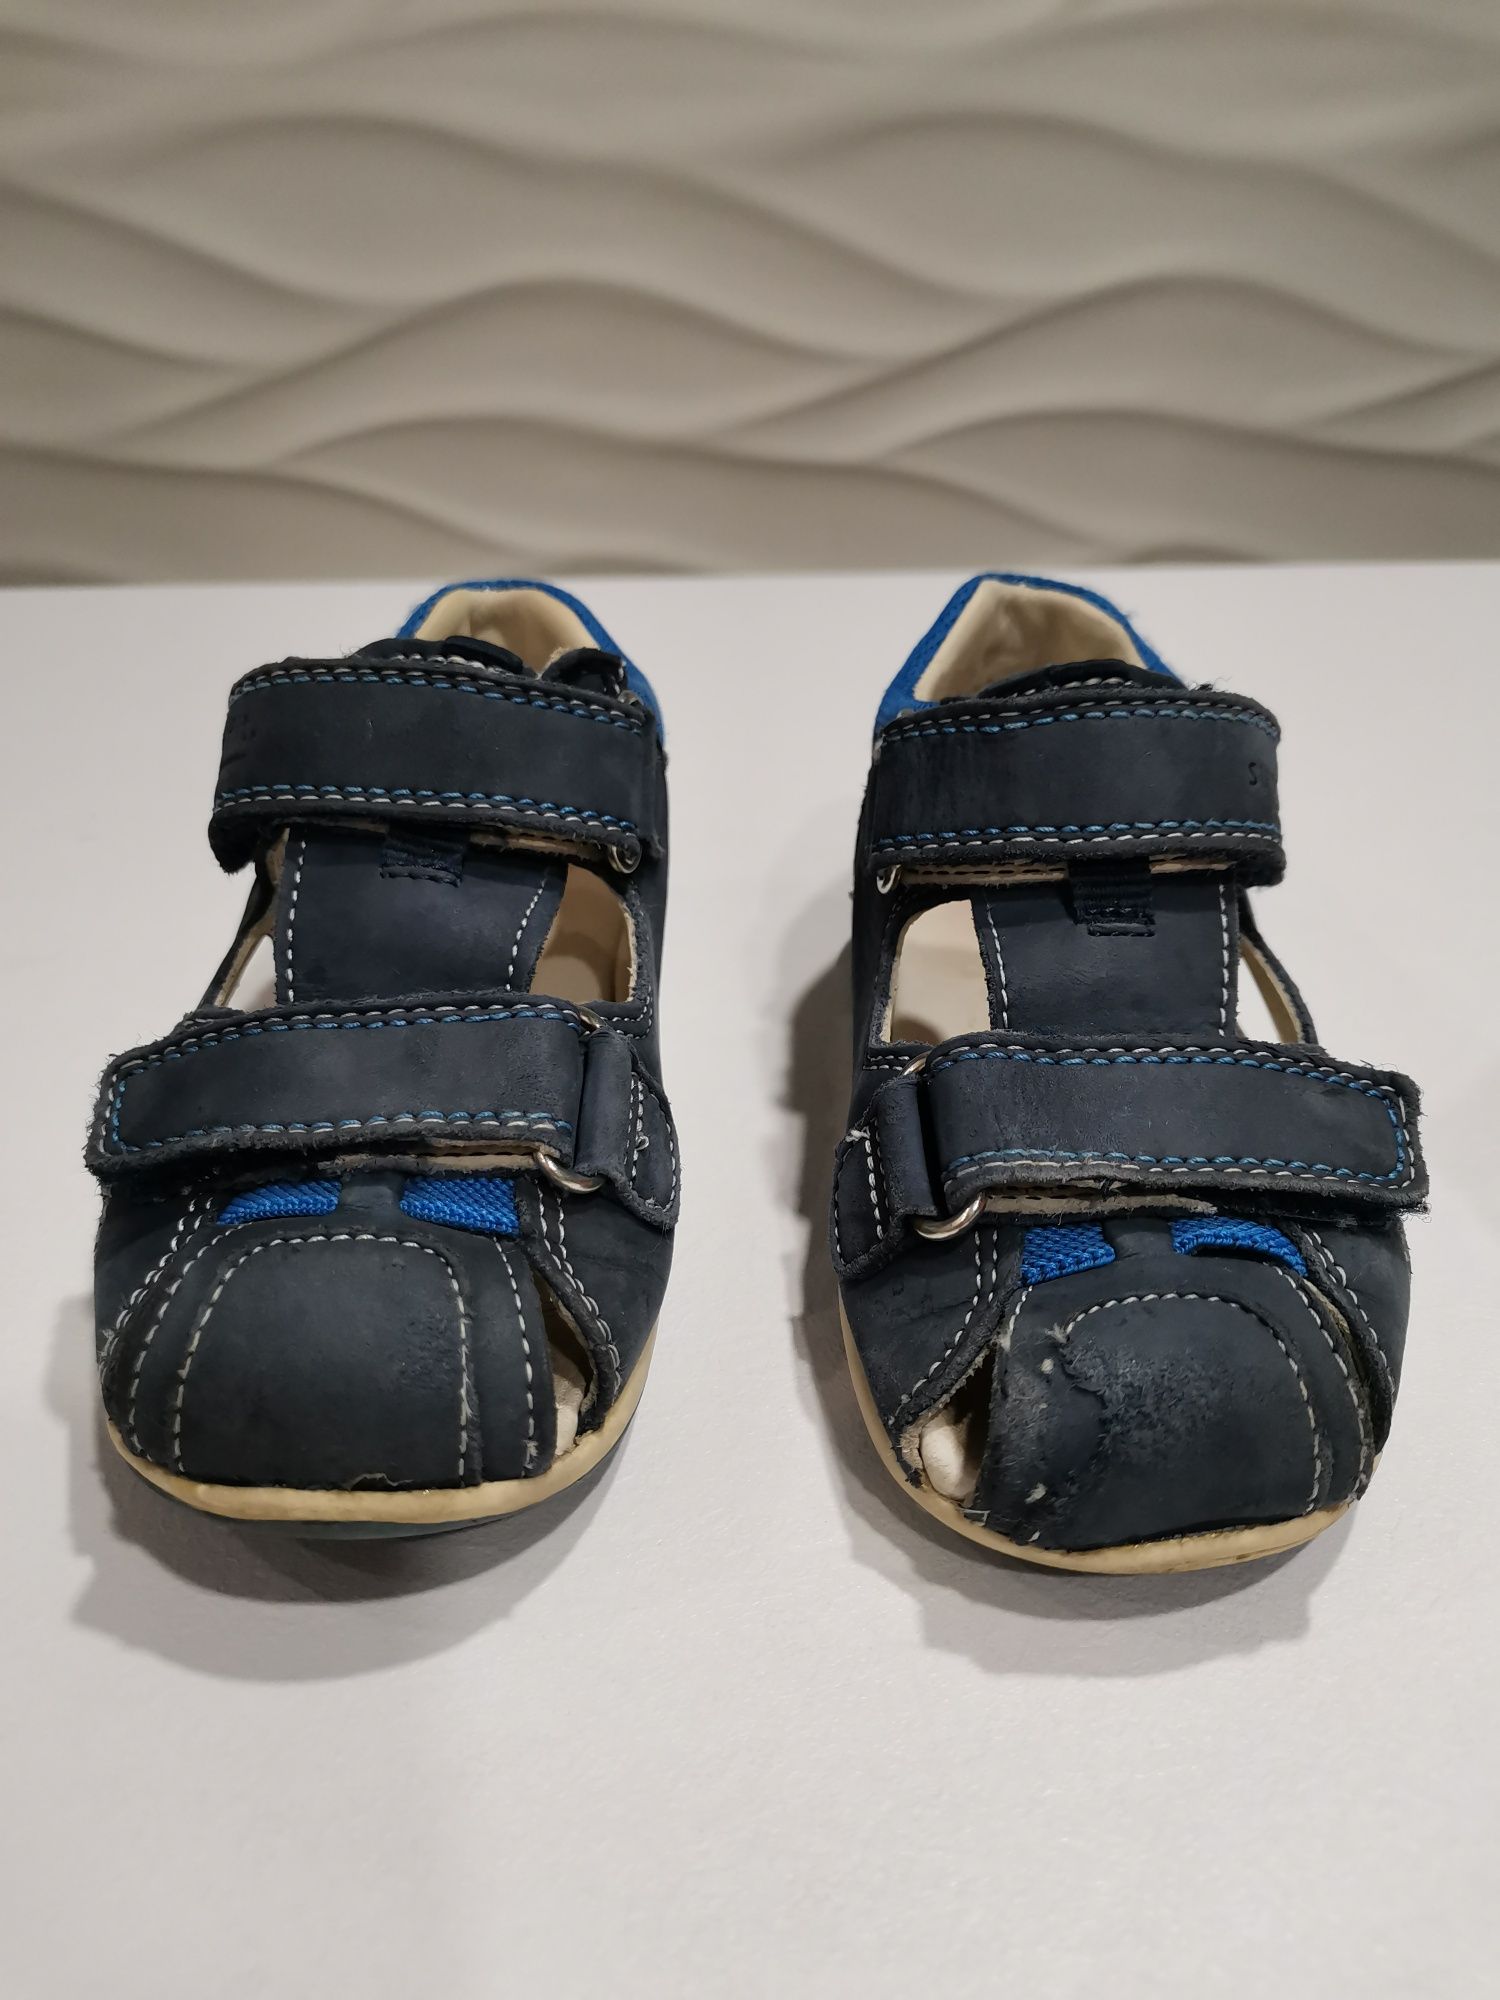 Босоножки сандалии для мальчика Superfit 24 размер